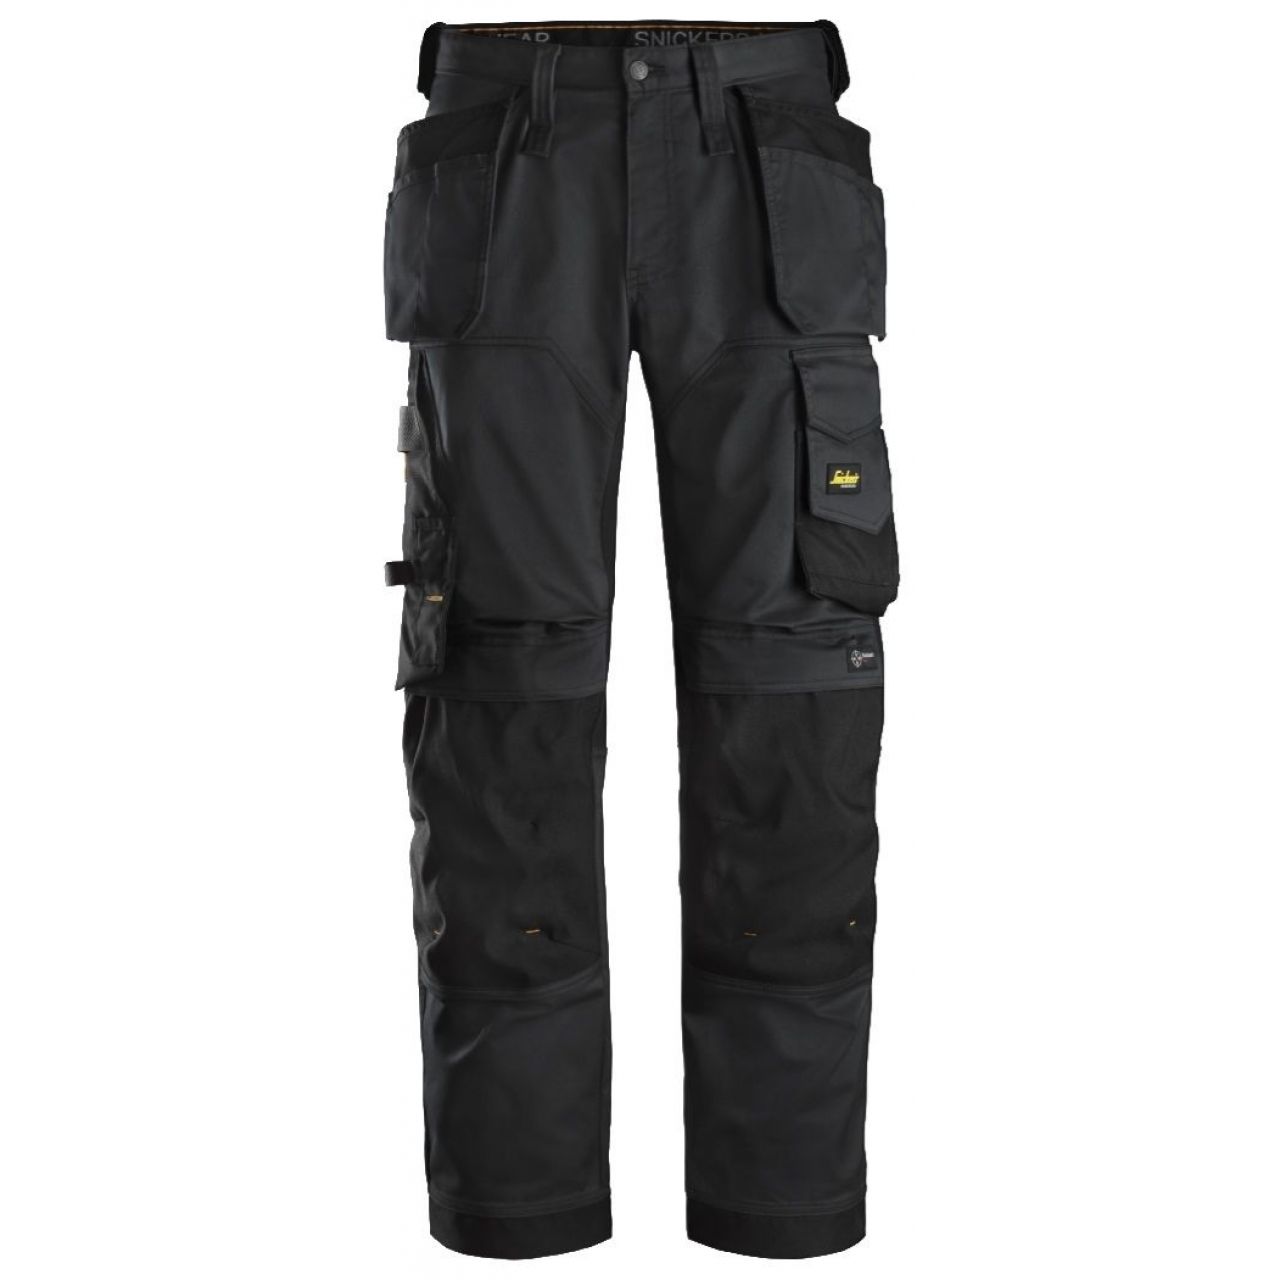 Pantalon elastico ajuste holgado AllroundWork bolsillos flotantes negro talla 058